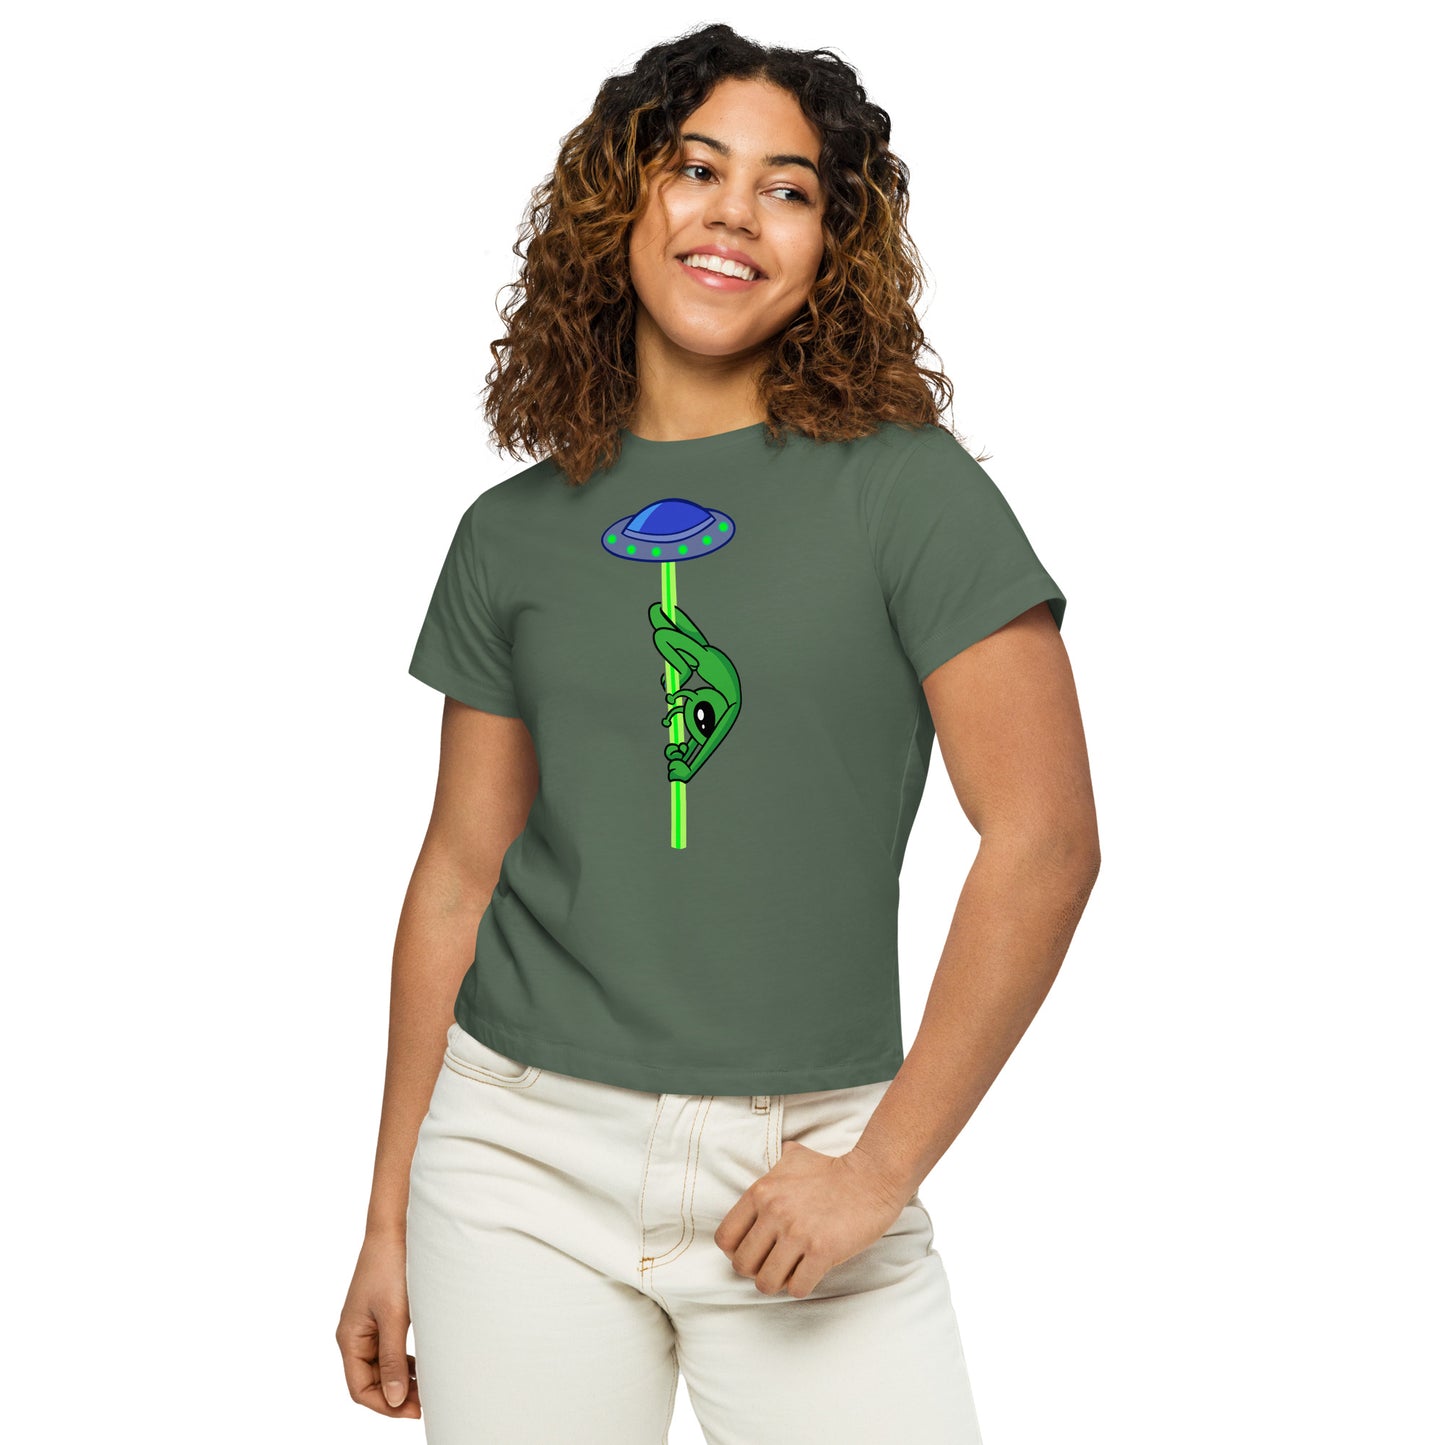 Remi Layback Alien - Women’s high-waisted t-shirt